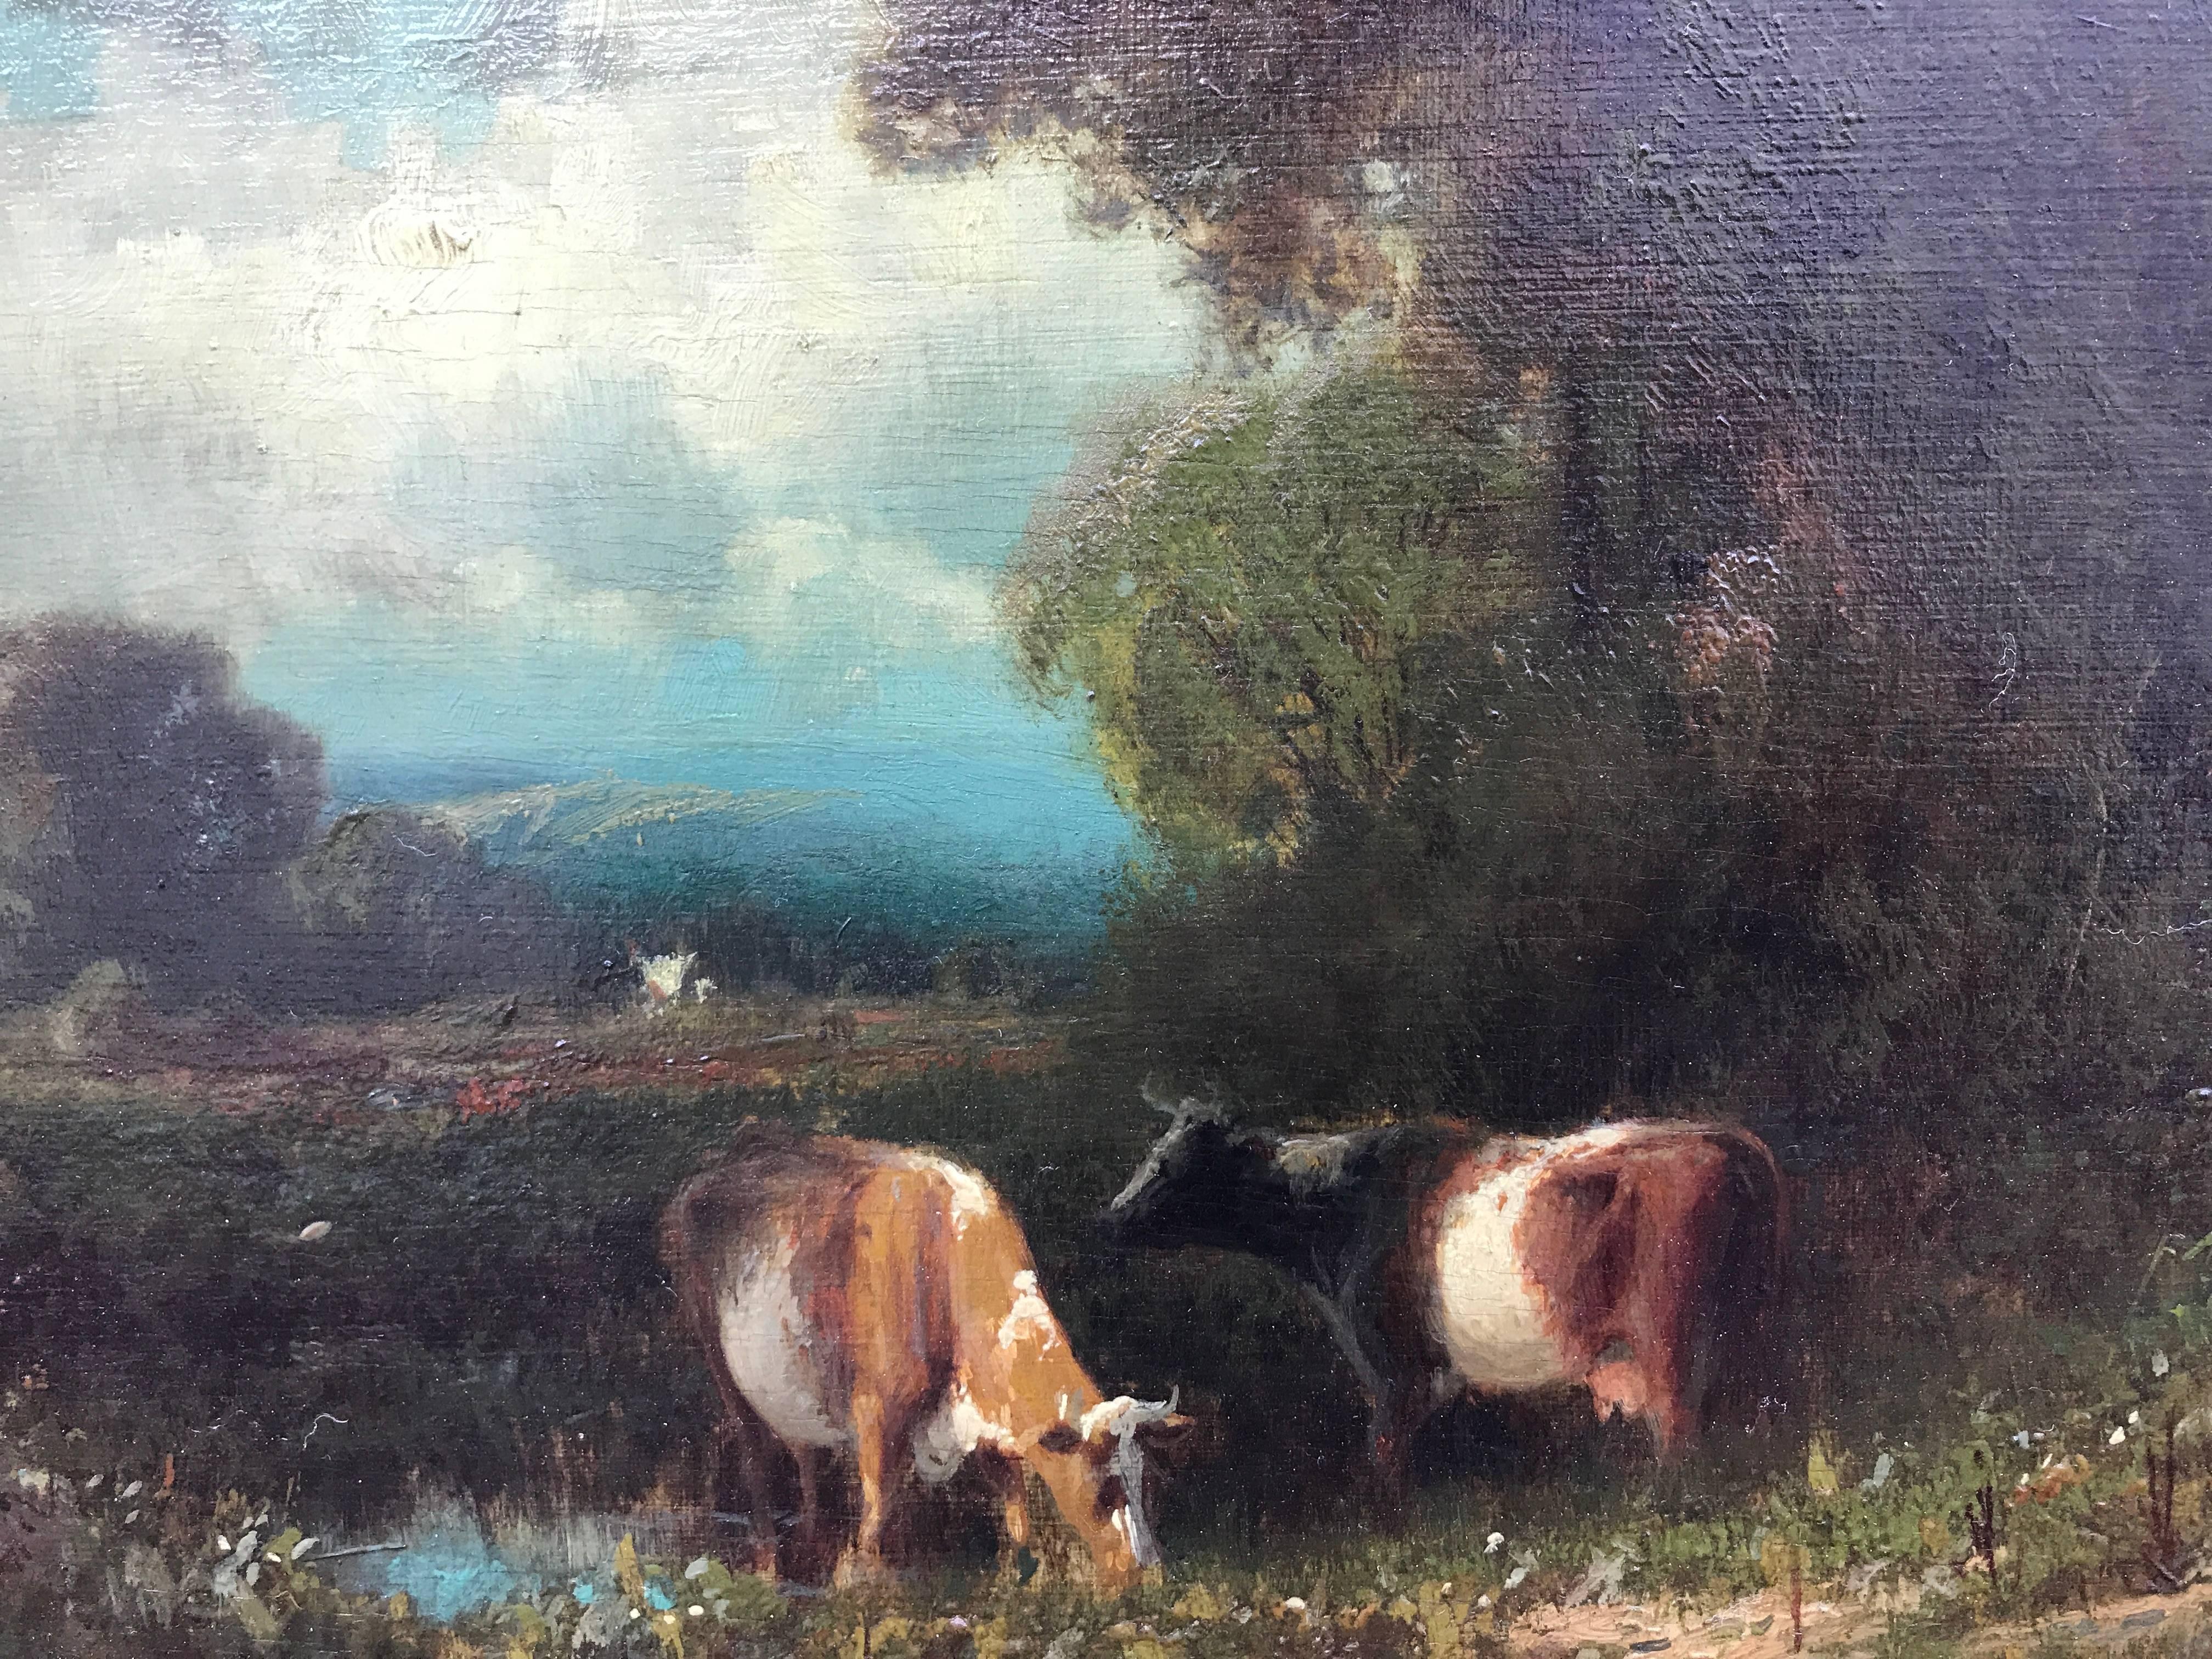 "Les vaches dans un paysage"